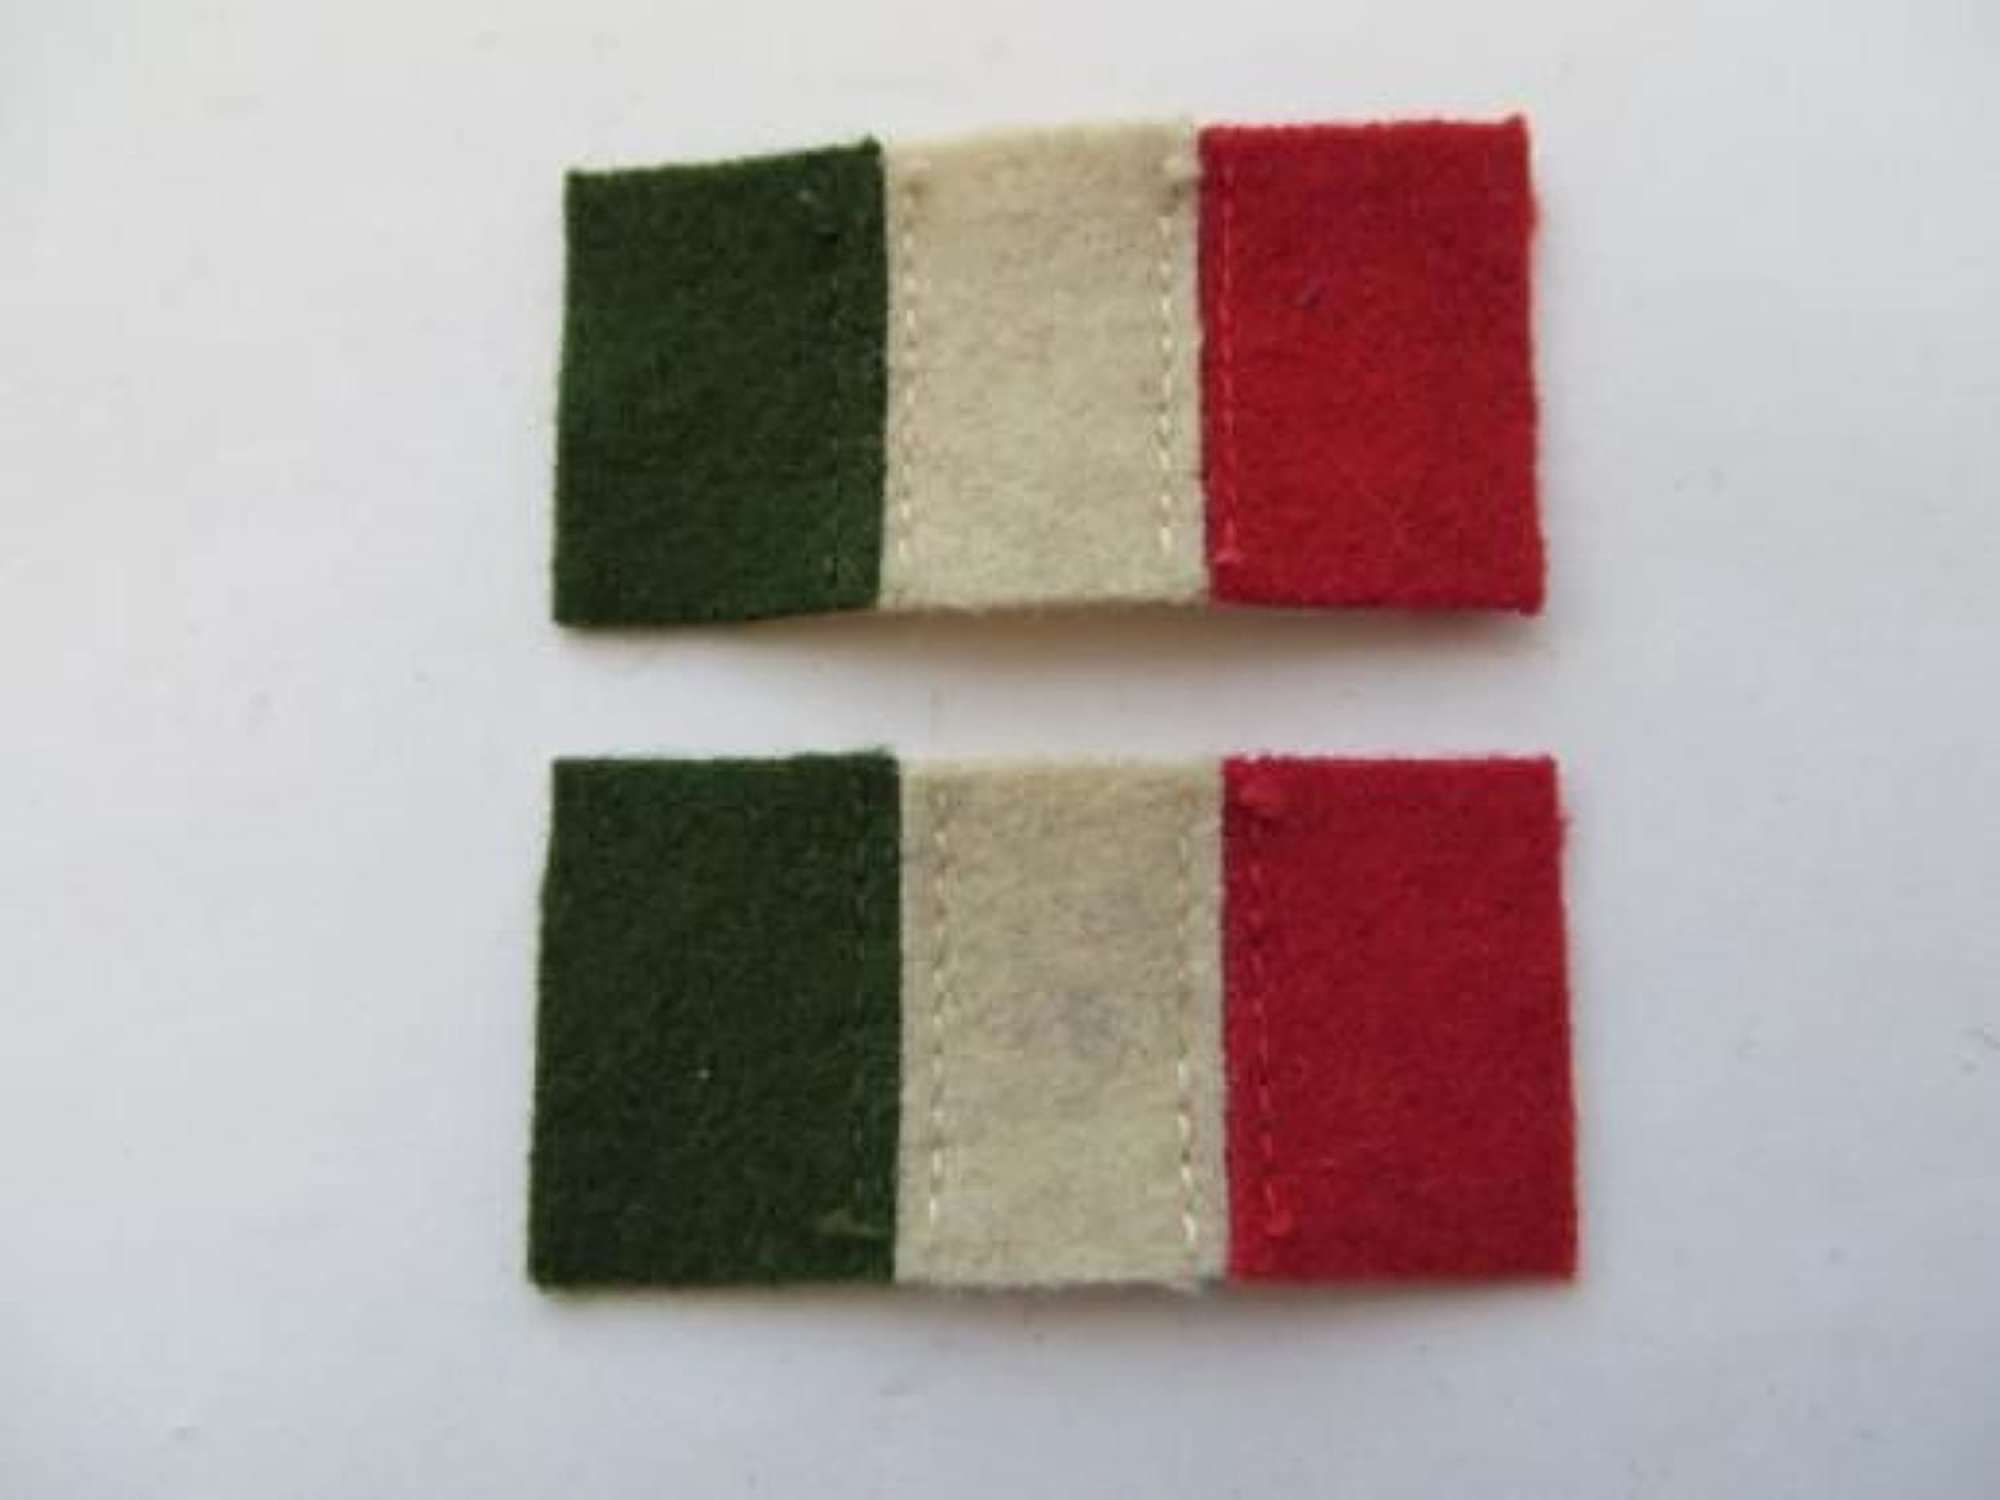 Pair of Regimental Formation Badges